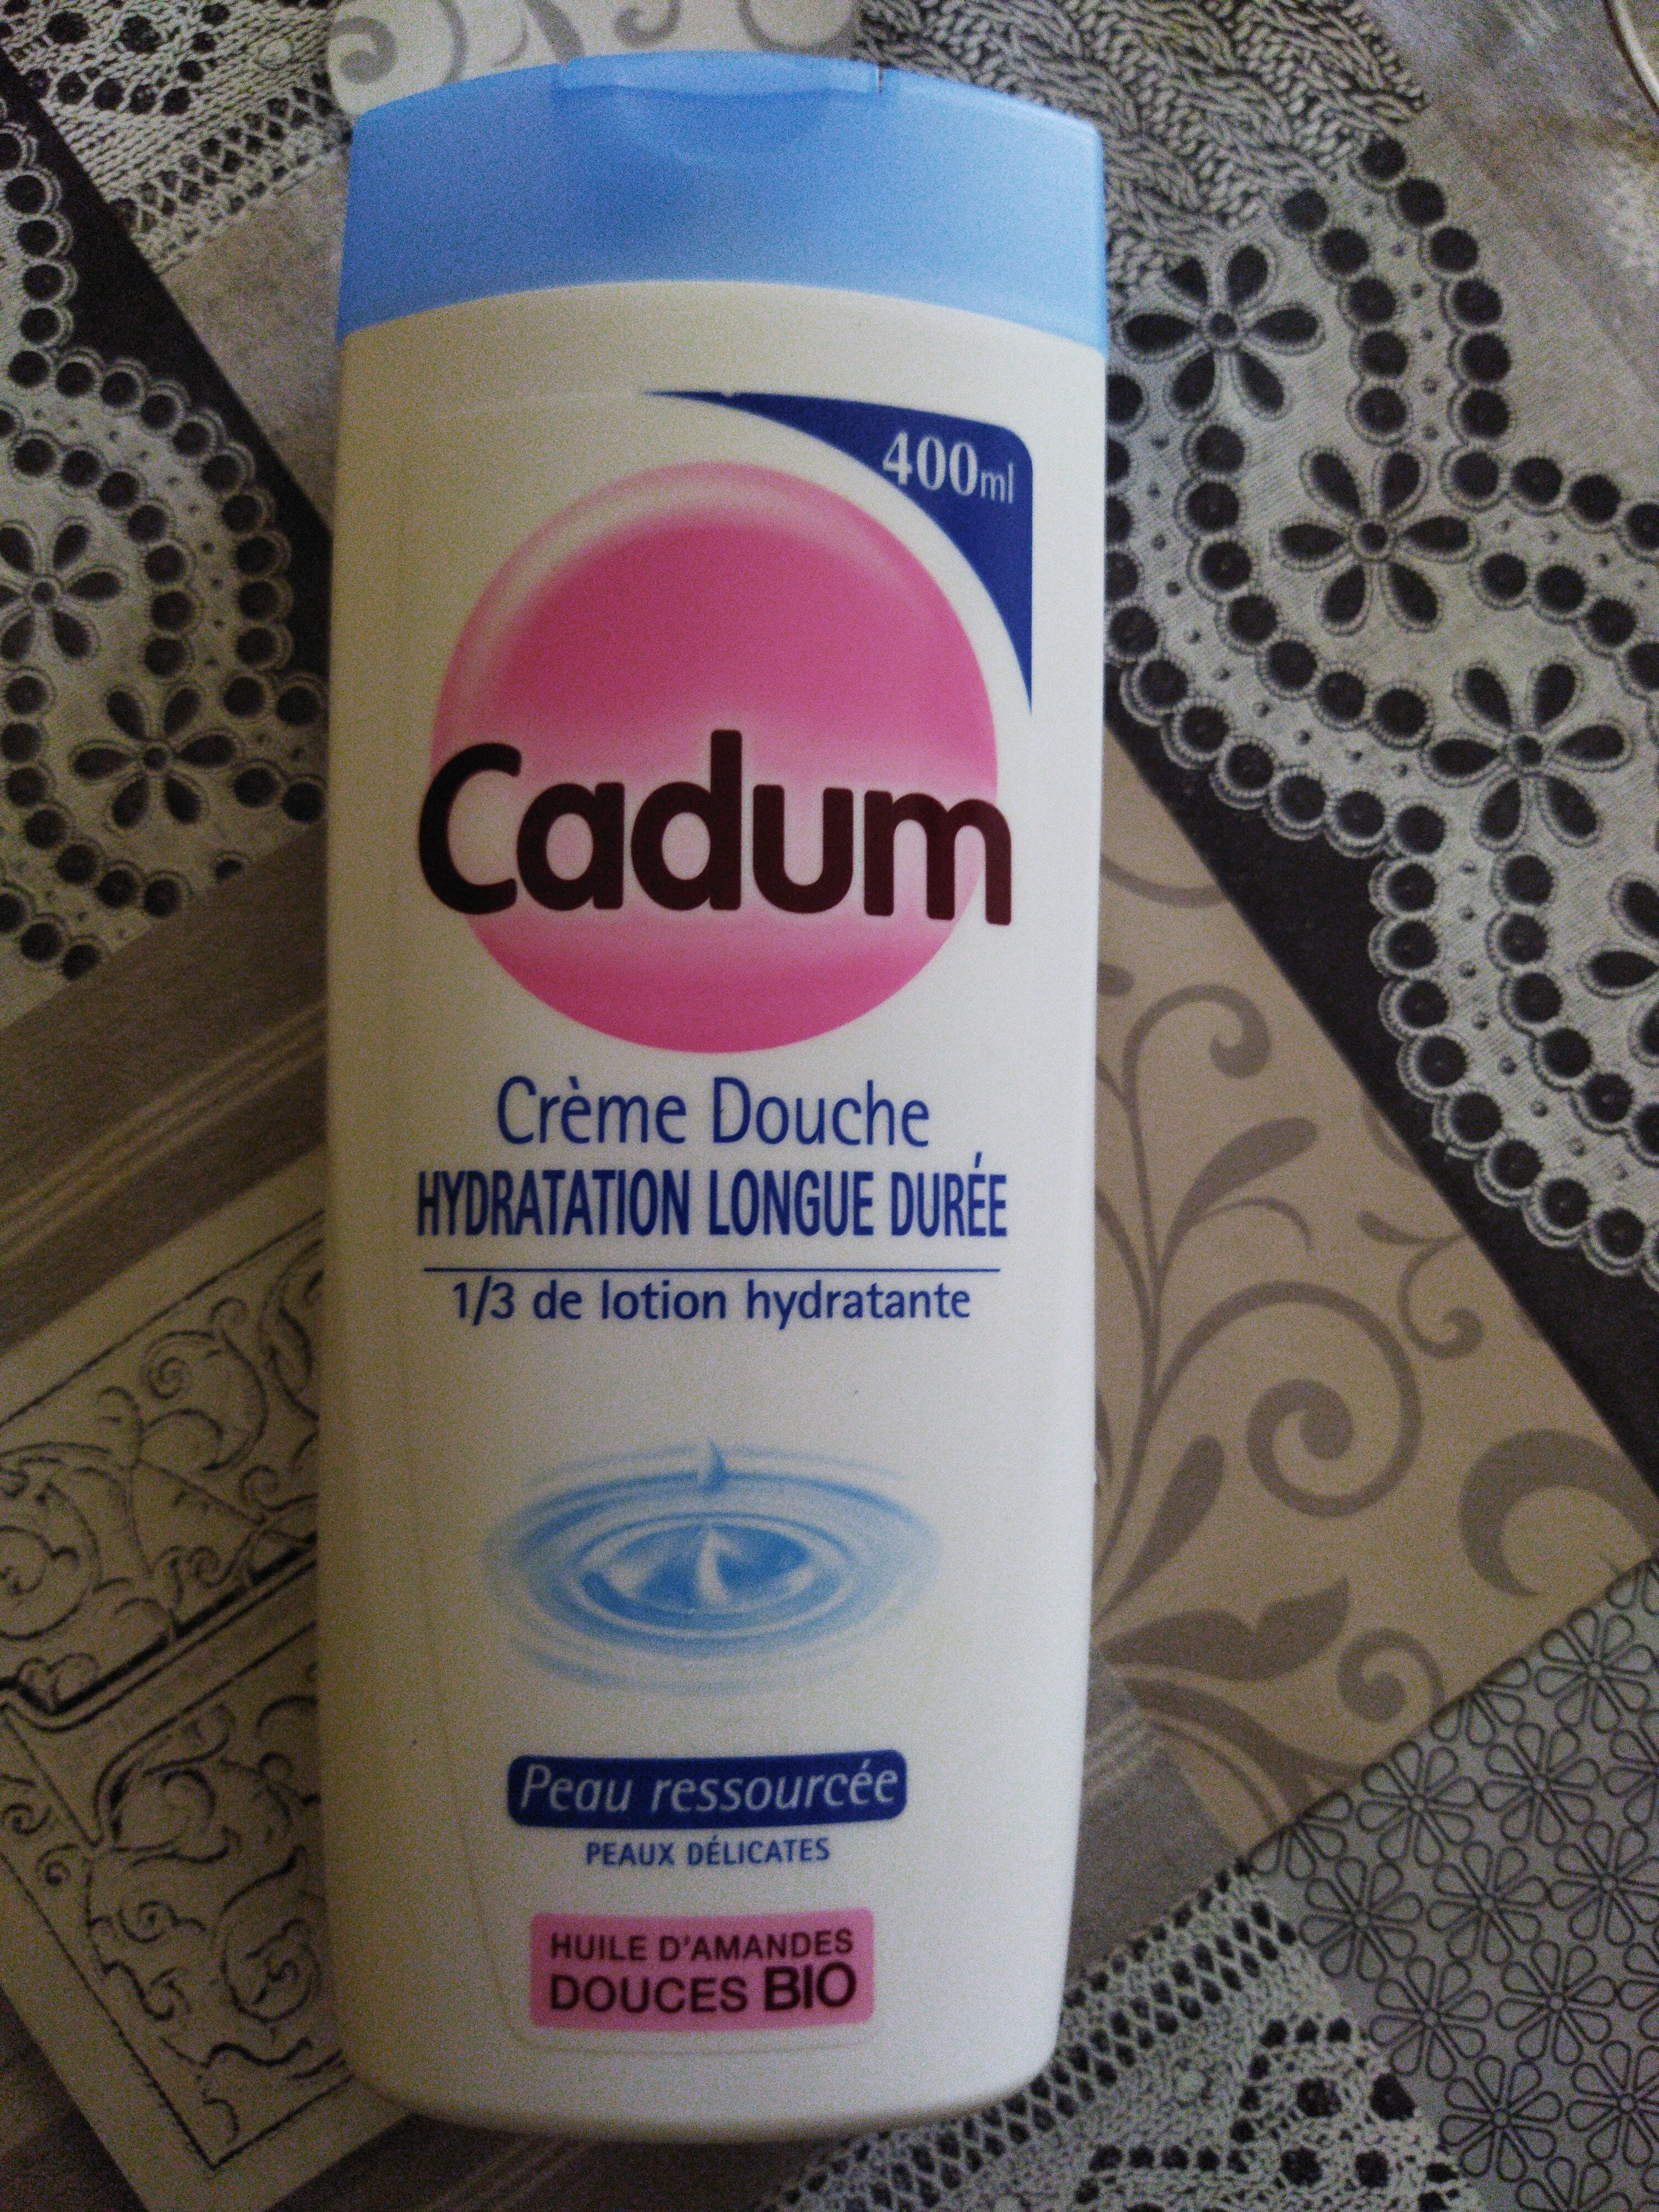 Cadum crème douche - Product - fr